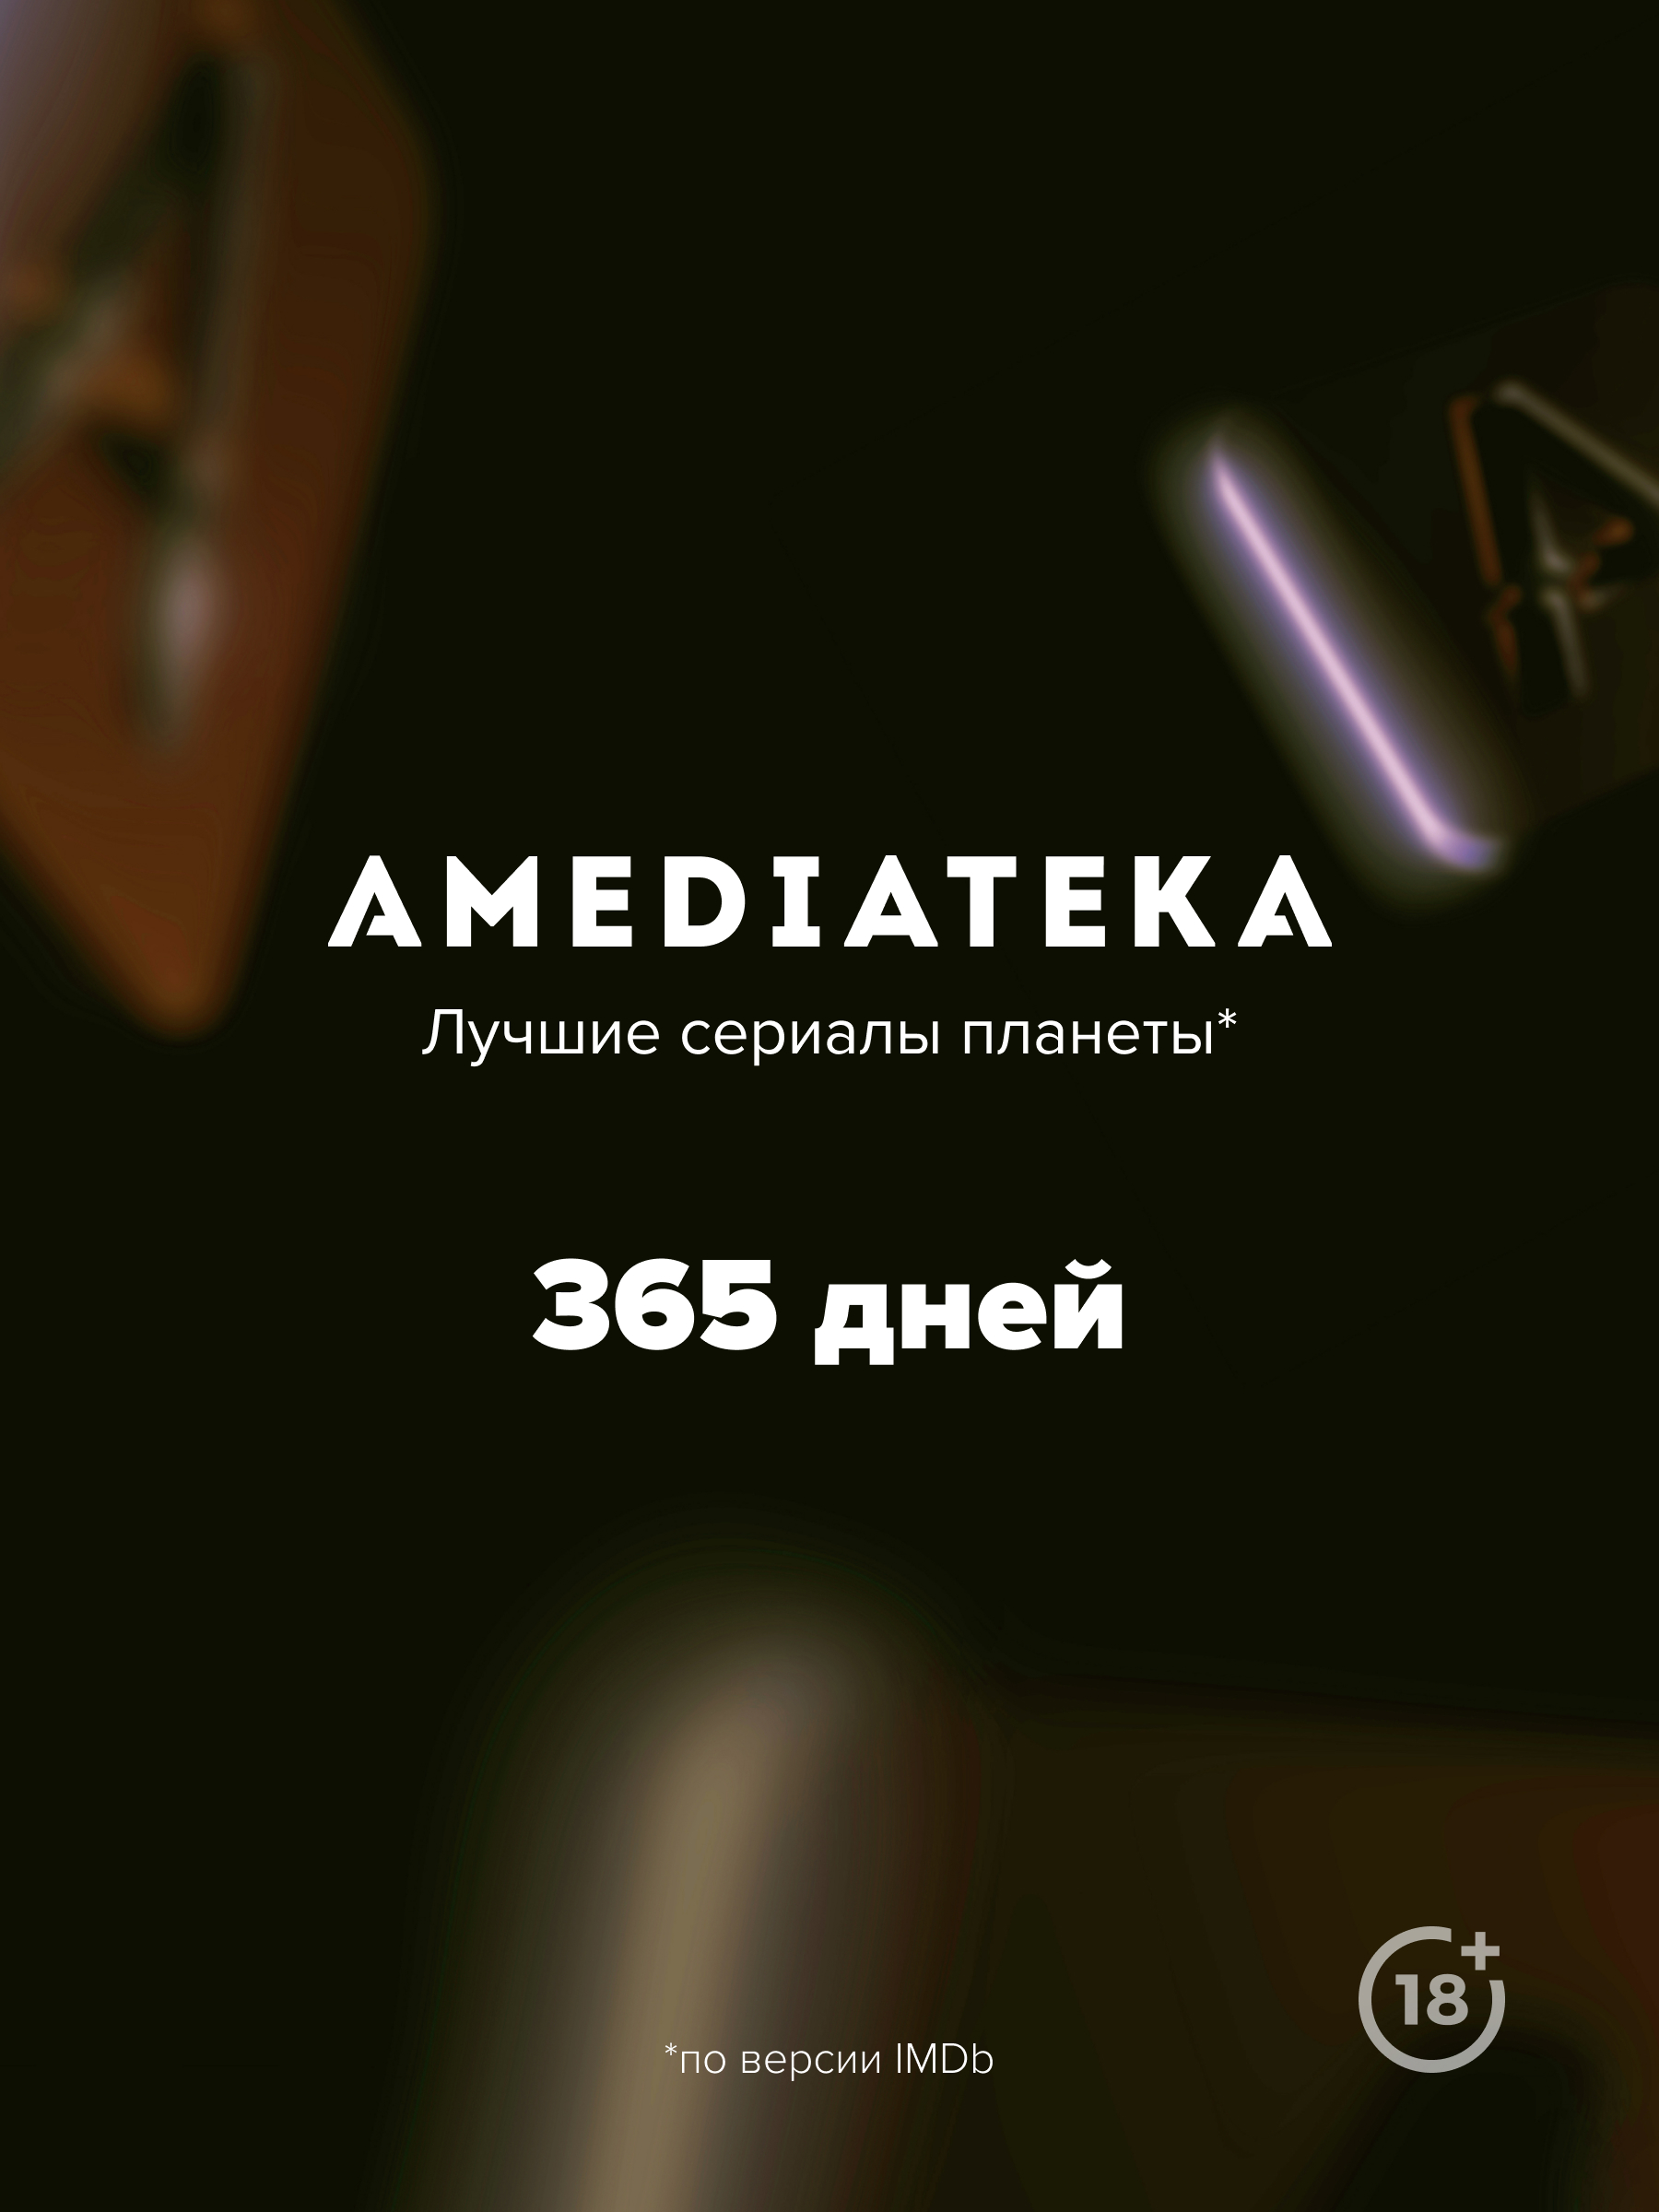 Онлайн-кинотеатр Amediateka (подписка на 365 дней) [Цифровая версия] (Цифровая версия) от 1С Интерес